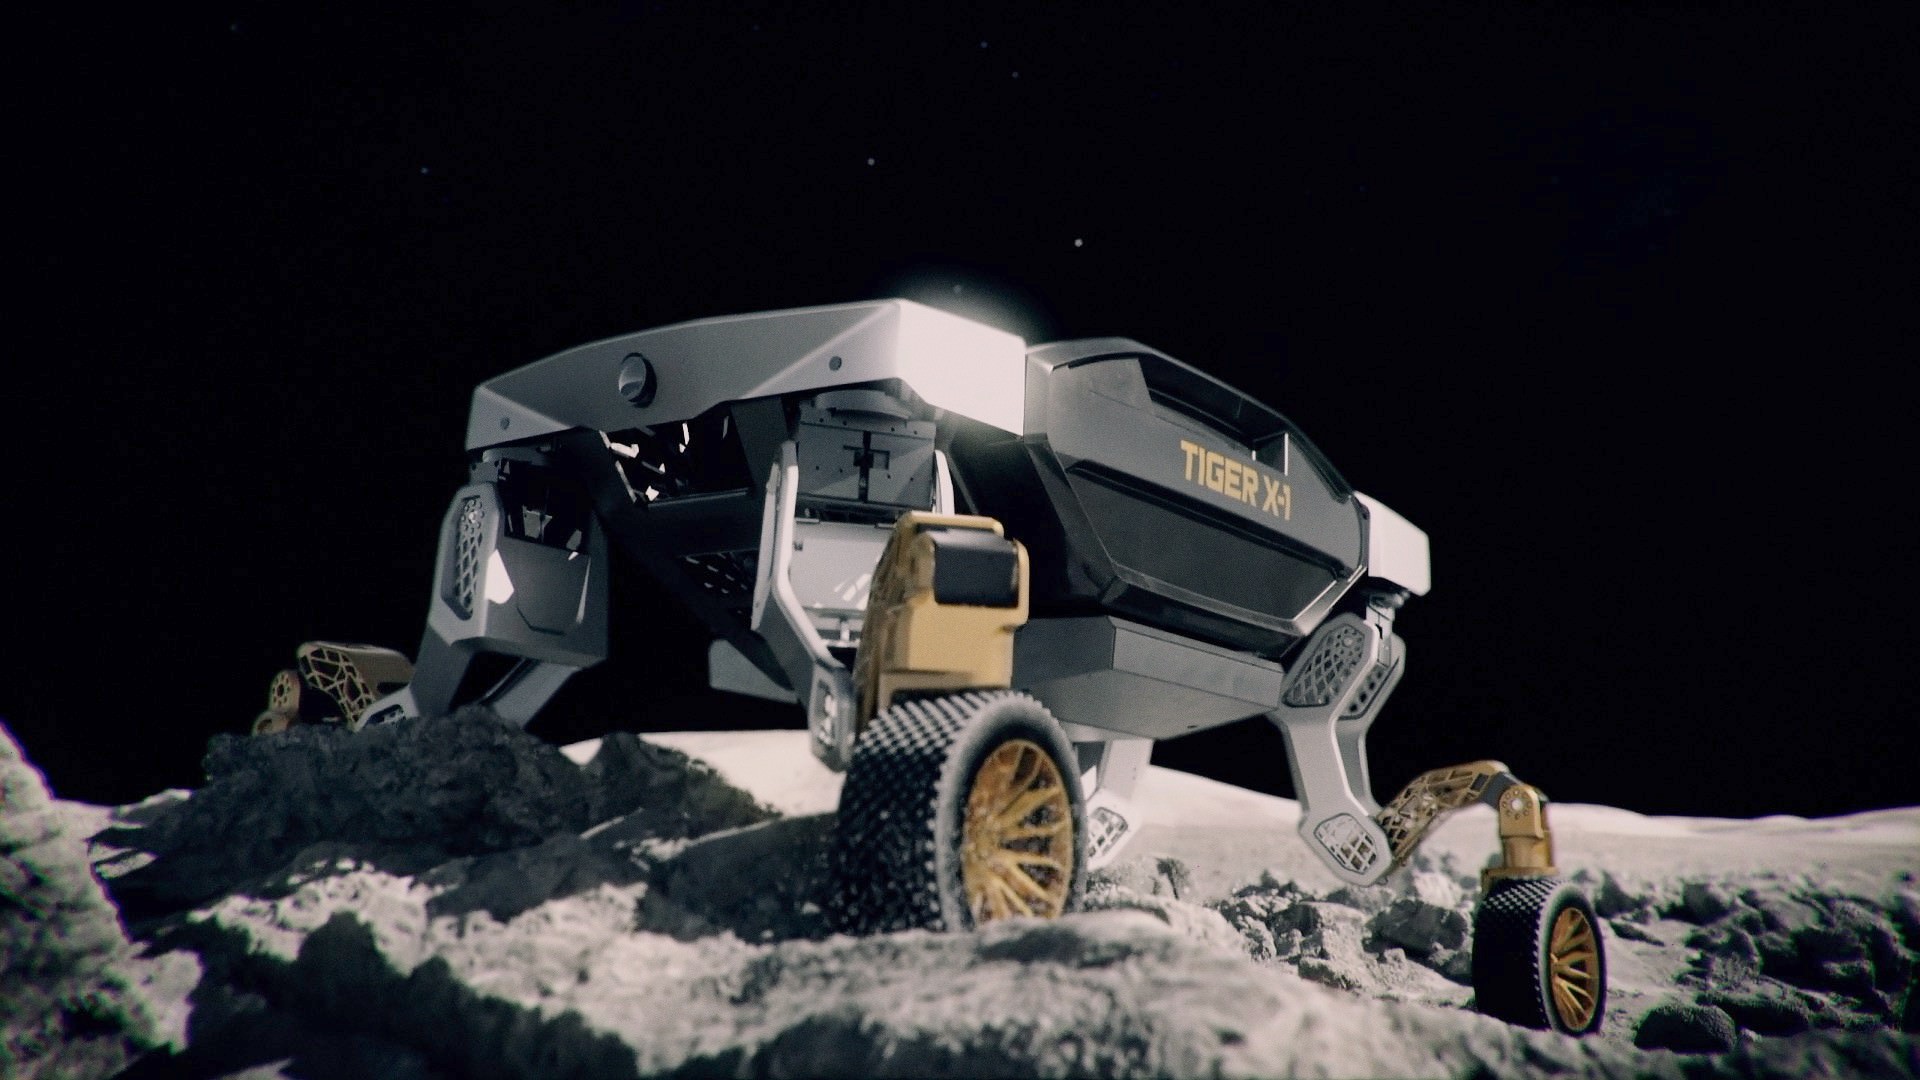 خودروی مفهومی رباتیک هیوندای تایگر / Hyundai TIGER Concept روی ماه در حال اکتشاف